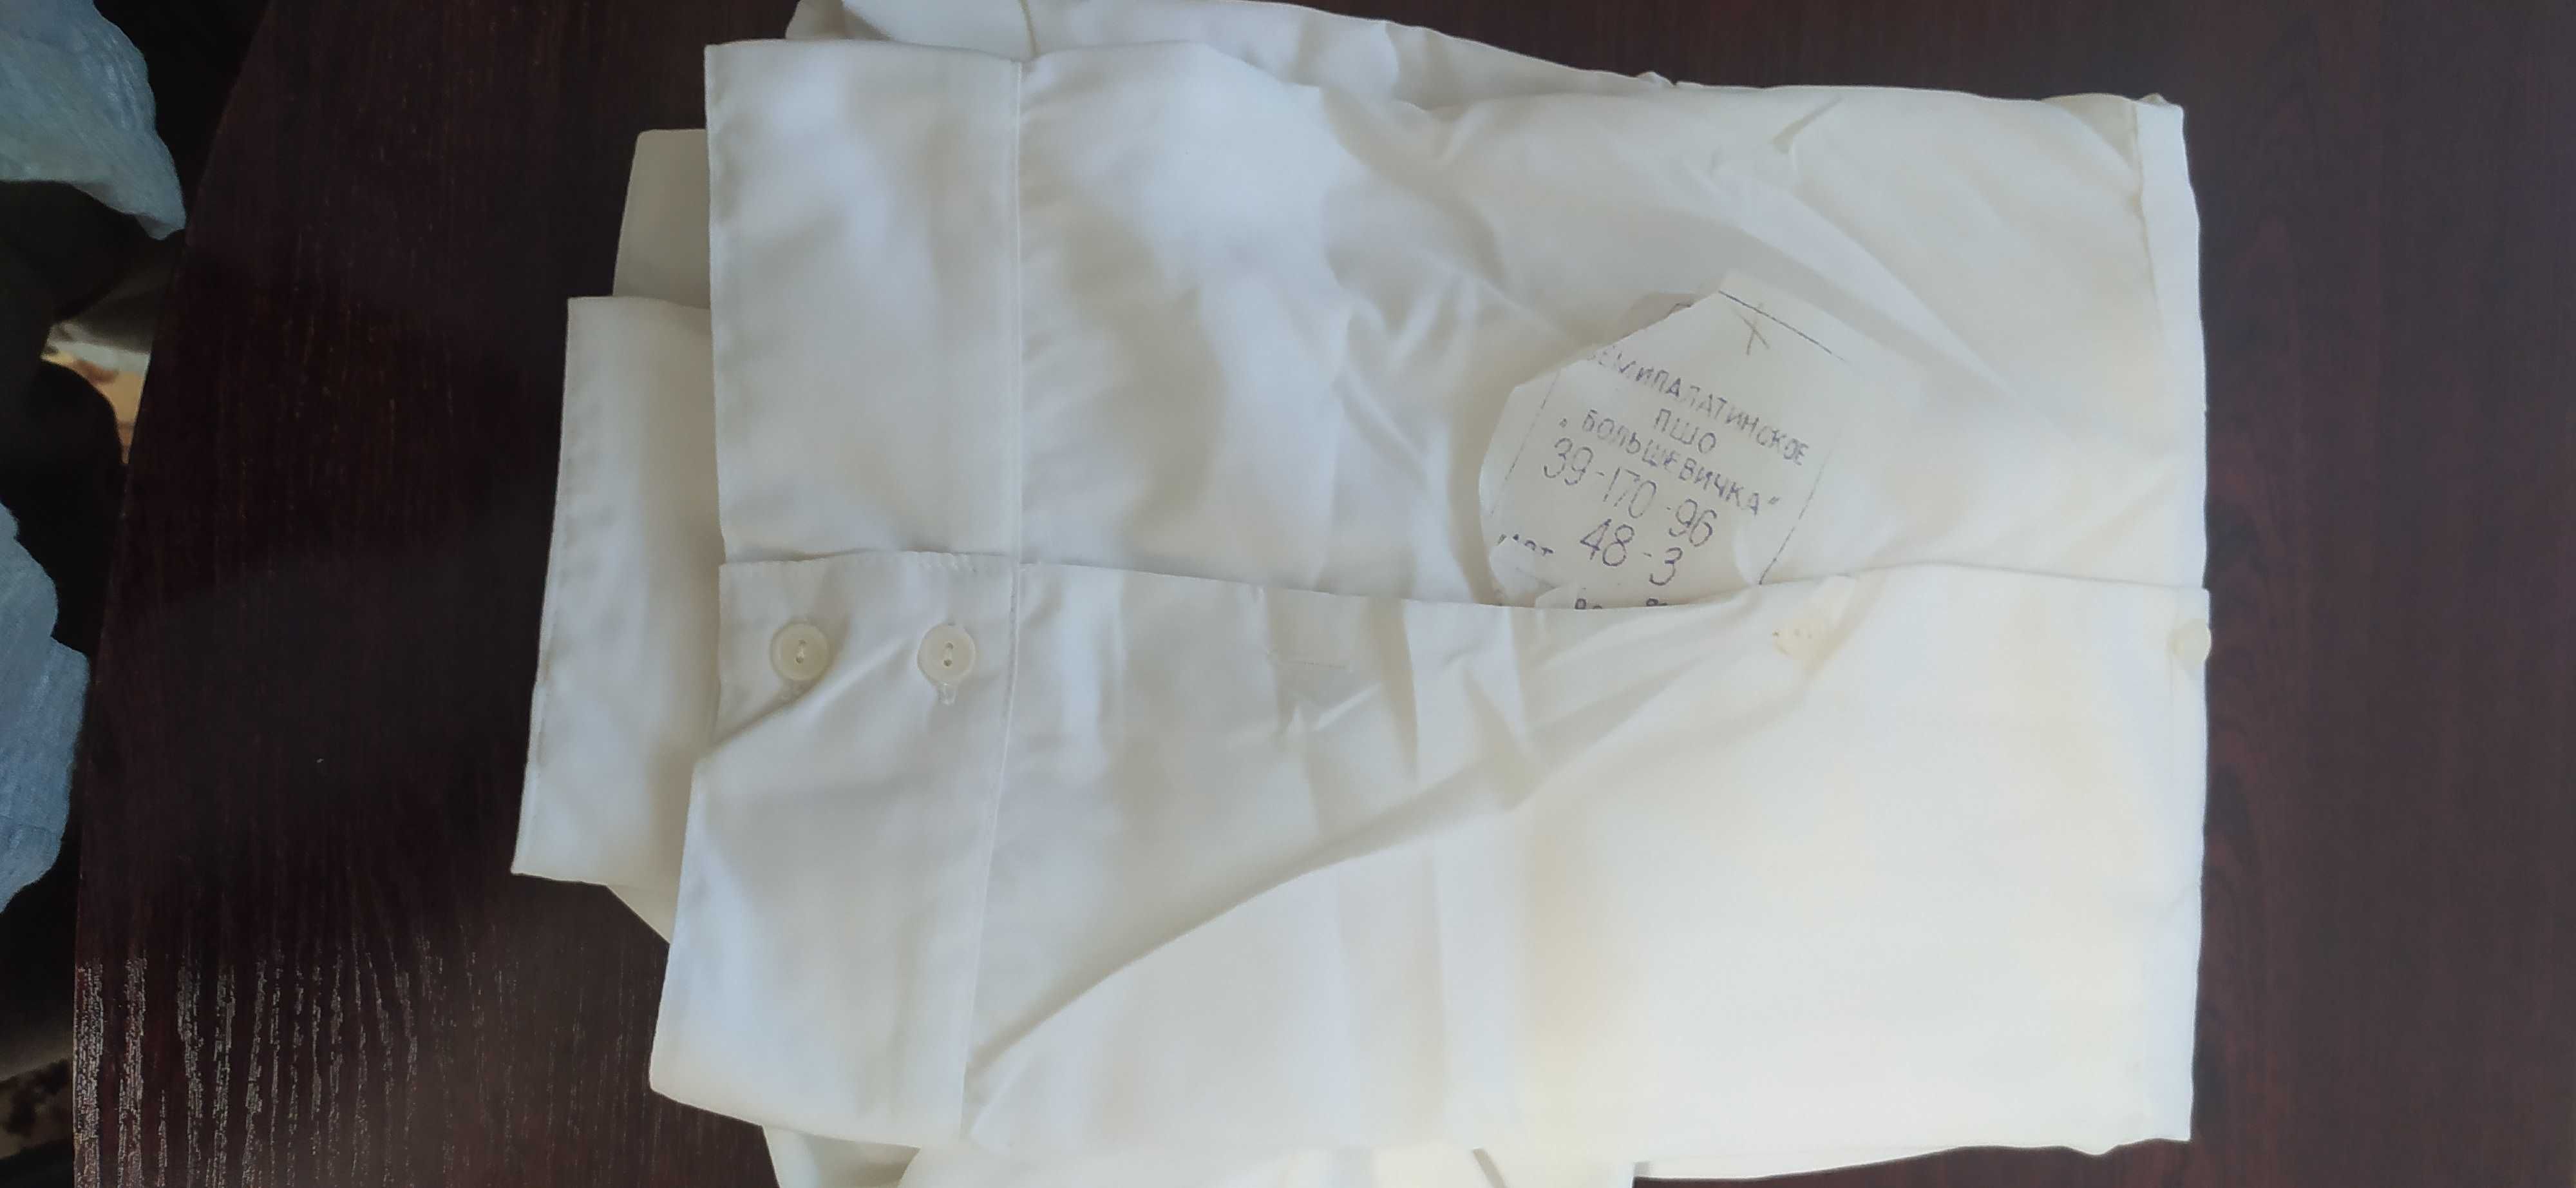 Рубашки ВМФ СССР - парадная и кремовые (повседневные), брюки форменные